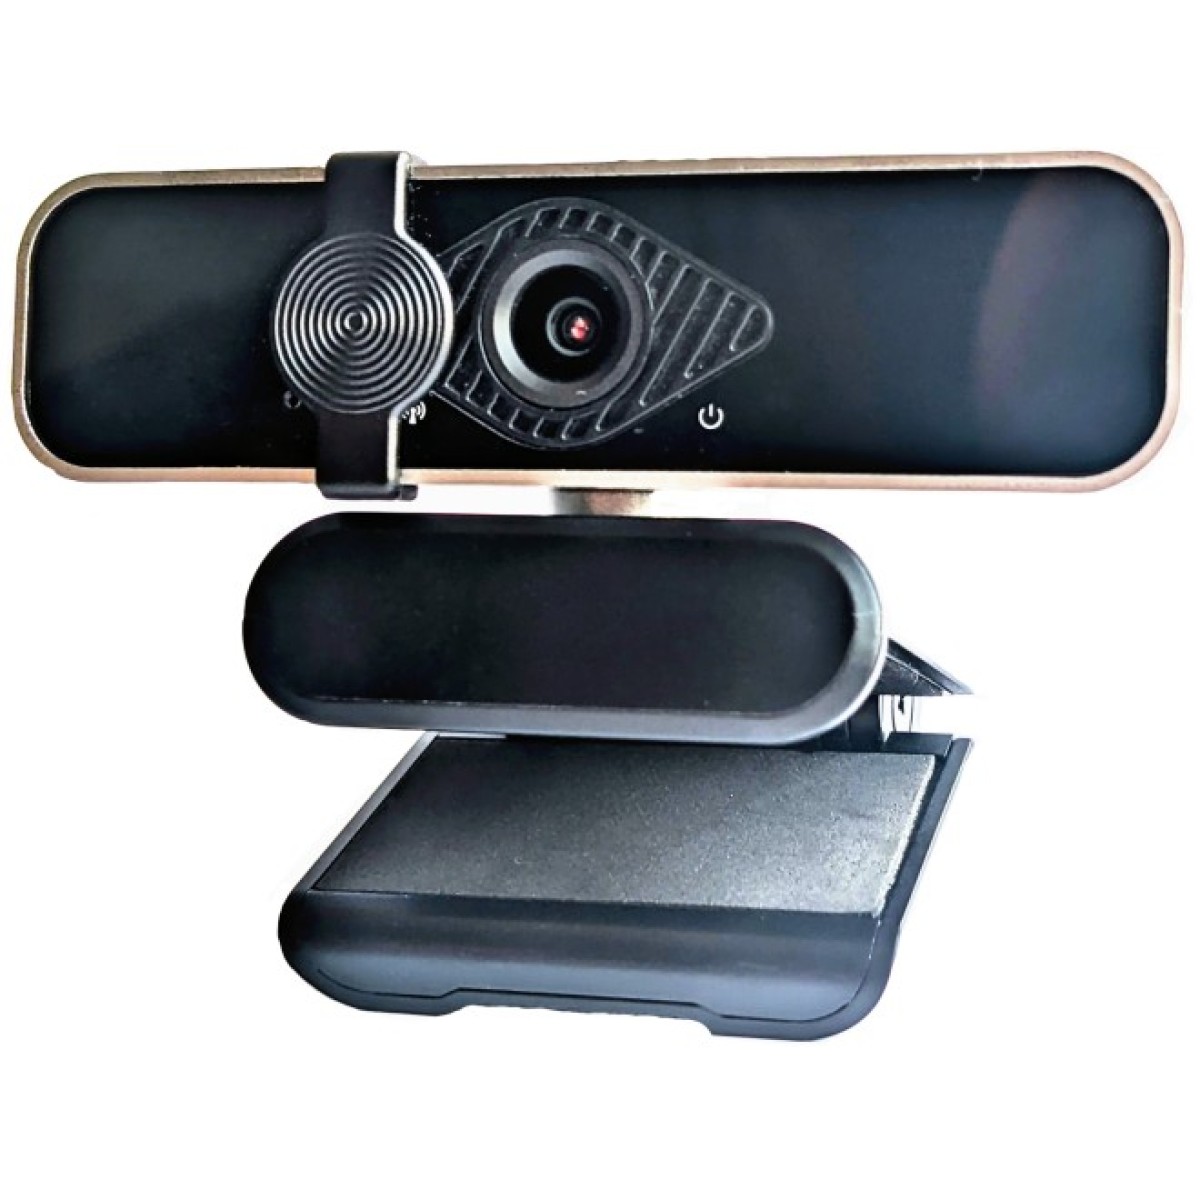 Веб-камера Dynamode H9 FullHD Silver-Black (H9) 256_256.jpg